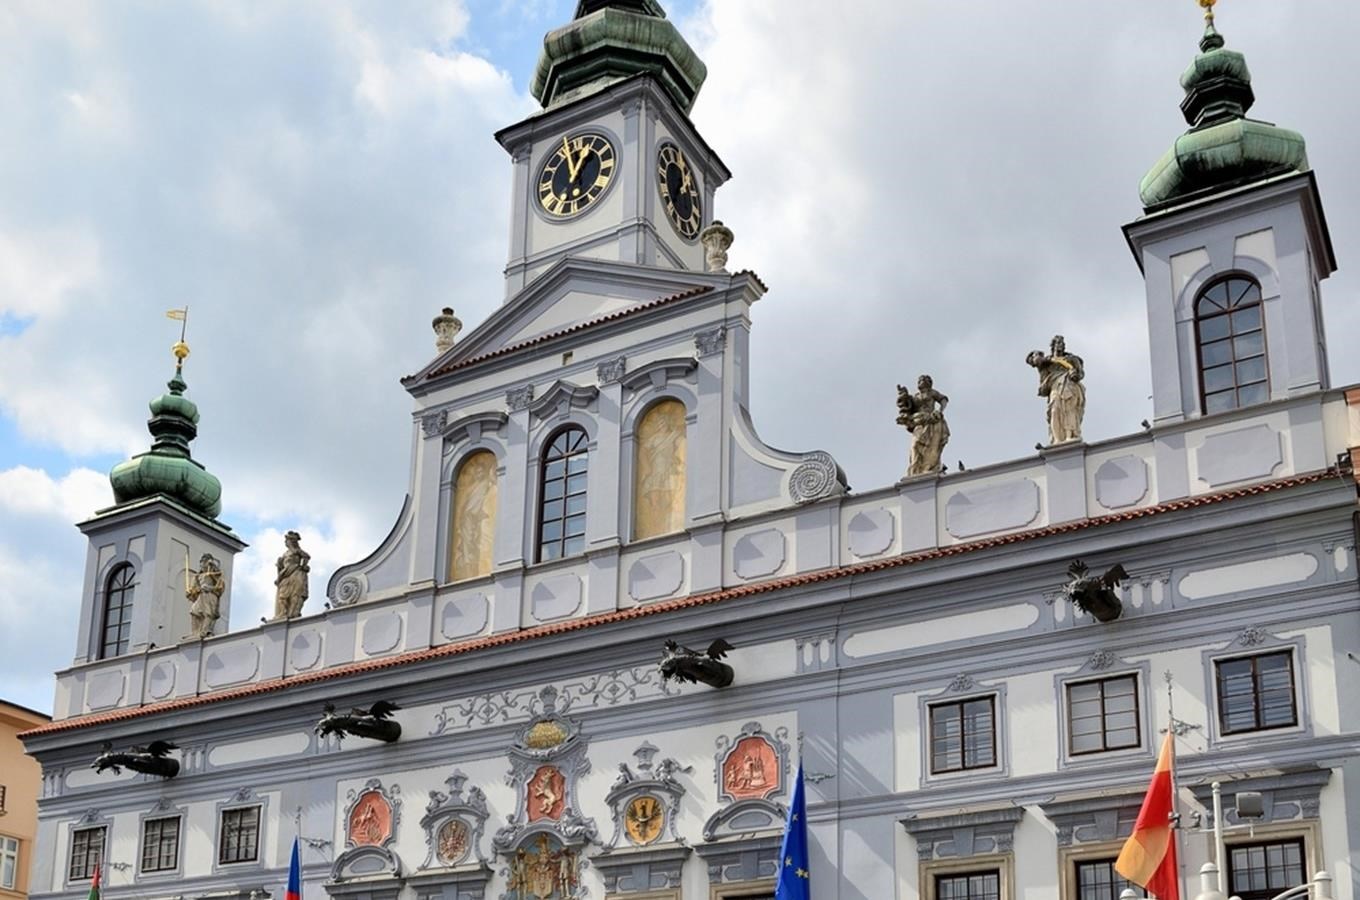 Prohlídka radnice s průvodcem v Českých Budějovicích